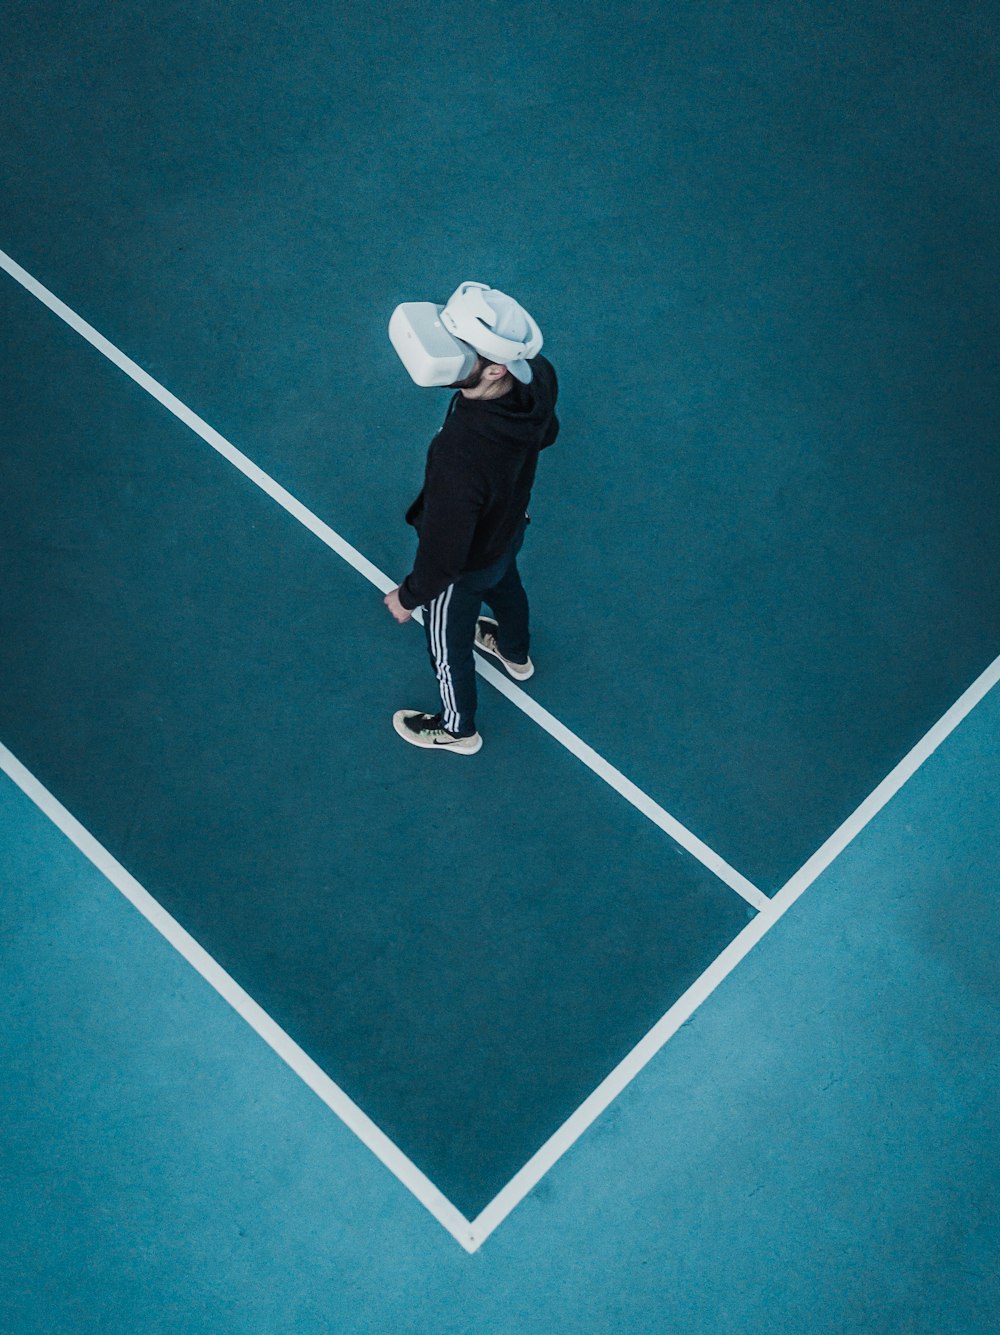 Mann im Trainingsanzug mit VR-Headset steht auf dem Tennisplatz